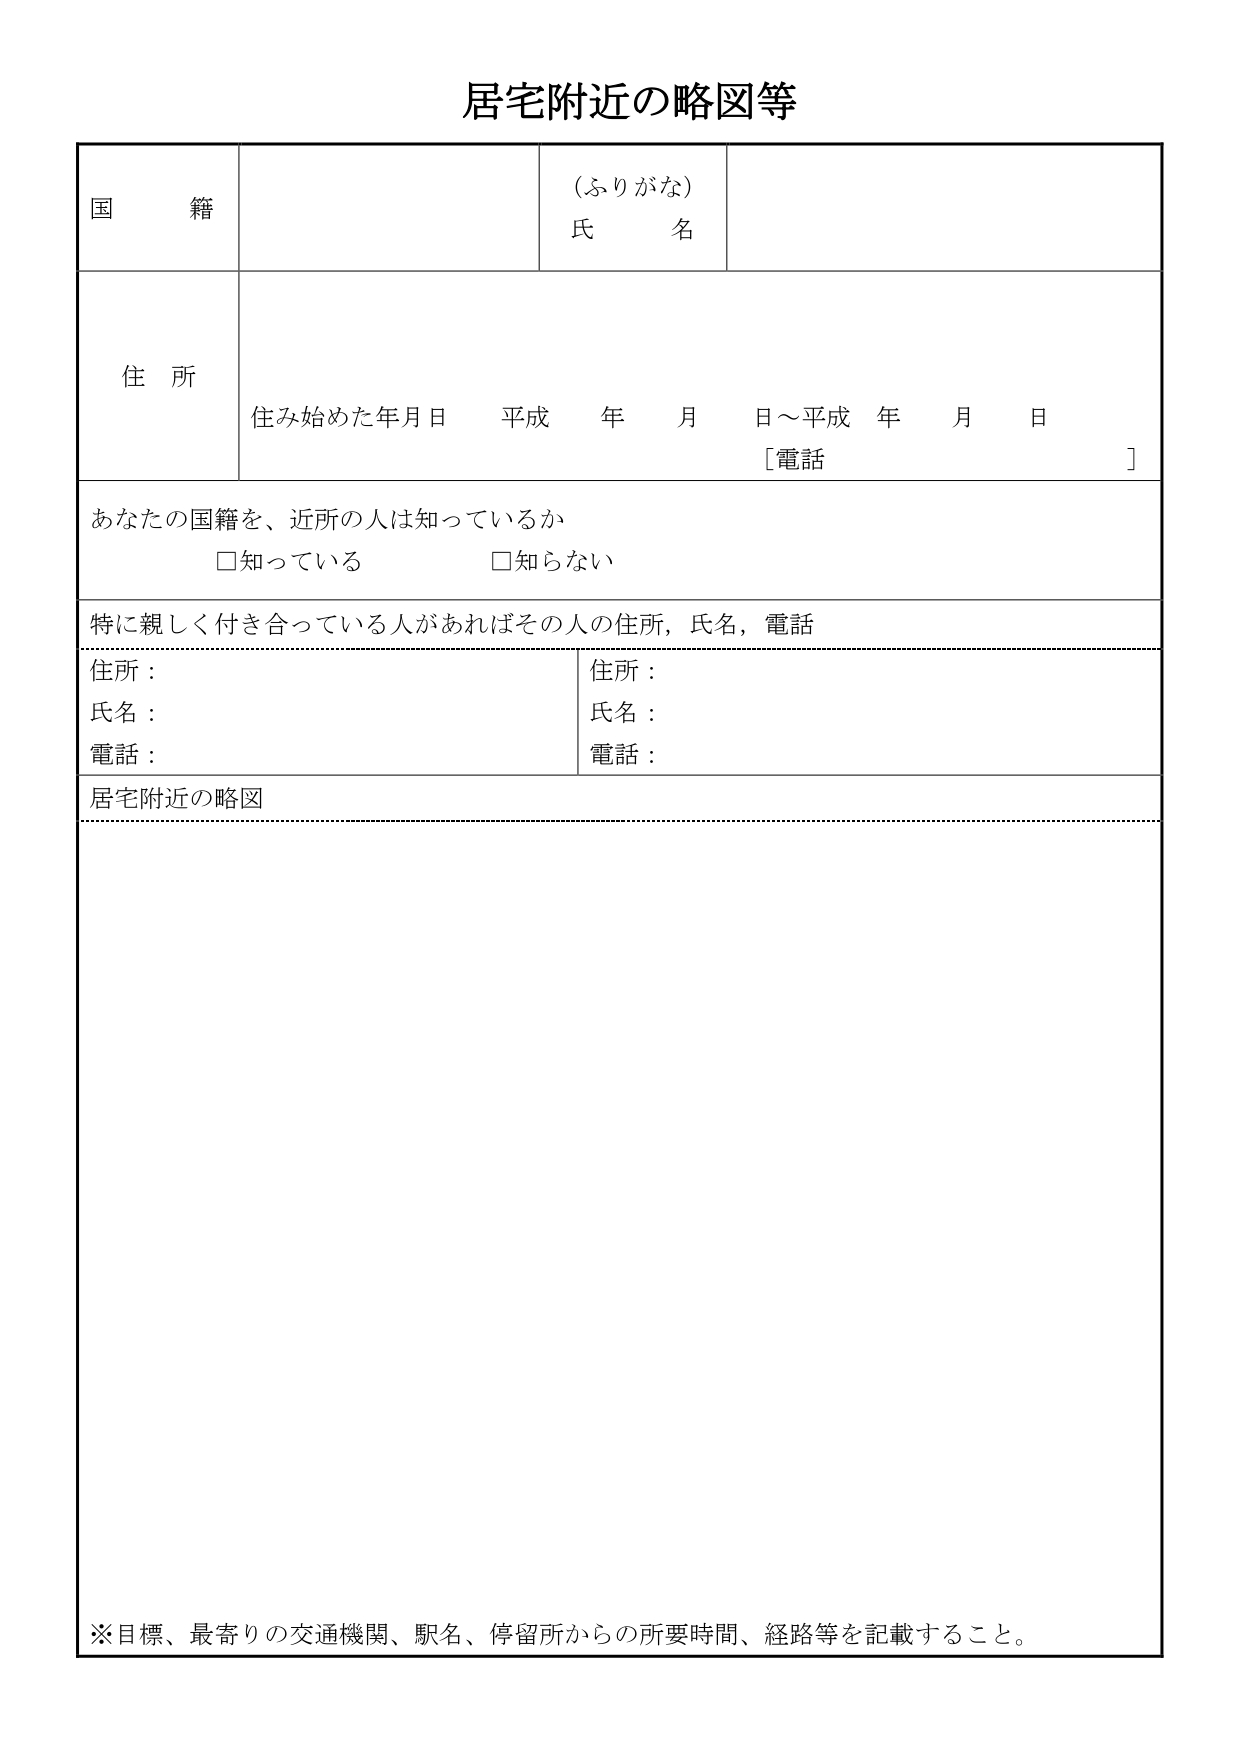 居宅附近の略図等の書き方 横浜帰化申請オフィス